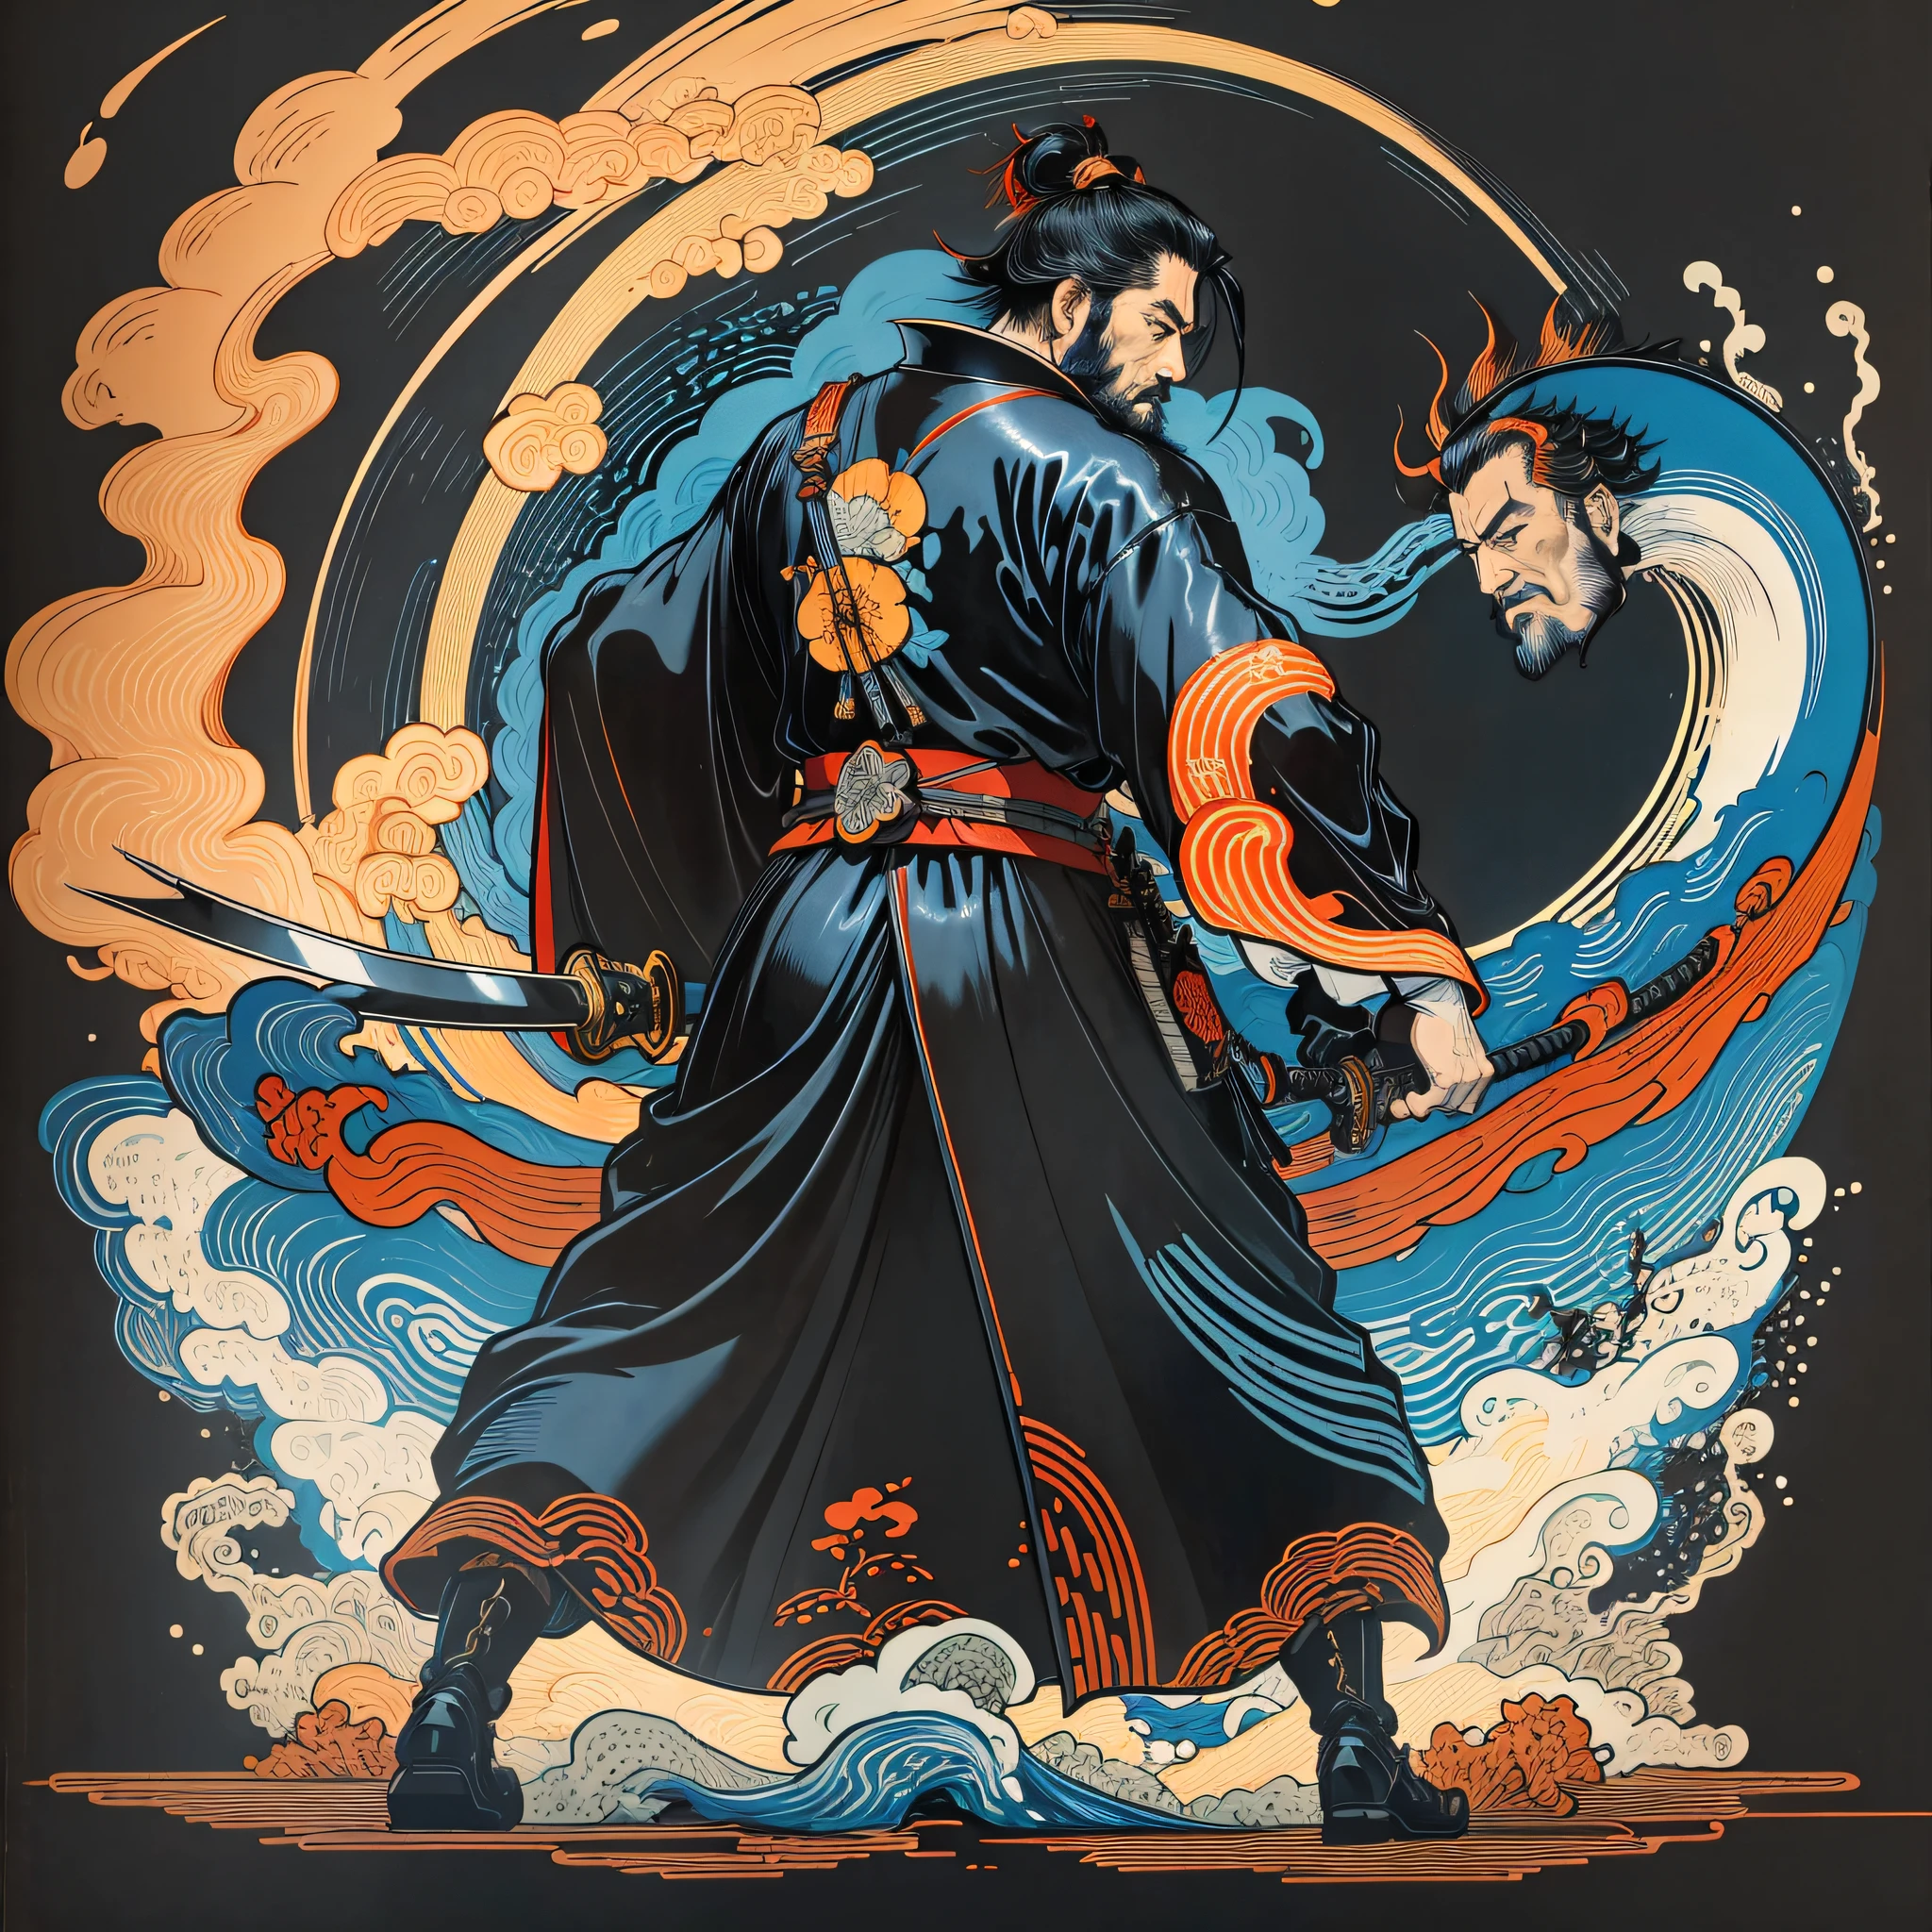 Es una pintura de cuerpo entero con colores naturales con dibujos lineales al estilo Katsushika Hokusai.. El espadachín Miyamoto Musashi tiene un cuerpo grande como el de un hombre fuerte.. Samurái de Japón. Tiene una expresión digna., mas viril, de determinación, pelo negro corto y barba corta y recortada. La parte superior de su cuerpo está cubierta por un kimono negro y su hakama llega hasta las rodillas.. en su mano derecha, él sostiene una espada japonesa con una parte más larga. En la más alta calidad, en alta resolución, estilo ukiyo-e, relámpagos y llamas giratorias de la obra maestra.. Miyamoto Musashi está de pie con la cara y el cuerpo mirando hacia adelante., hacia atrás. Crea la imagen en 16 relaciones de aspecto.:9. Pon al samurái en el centro y crea nuevos conceptos.. al mismo tiempo ser minimalista